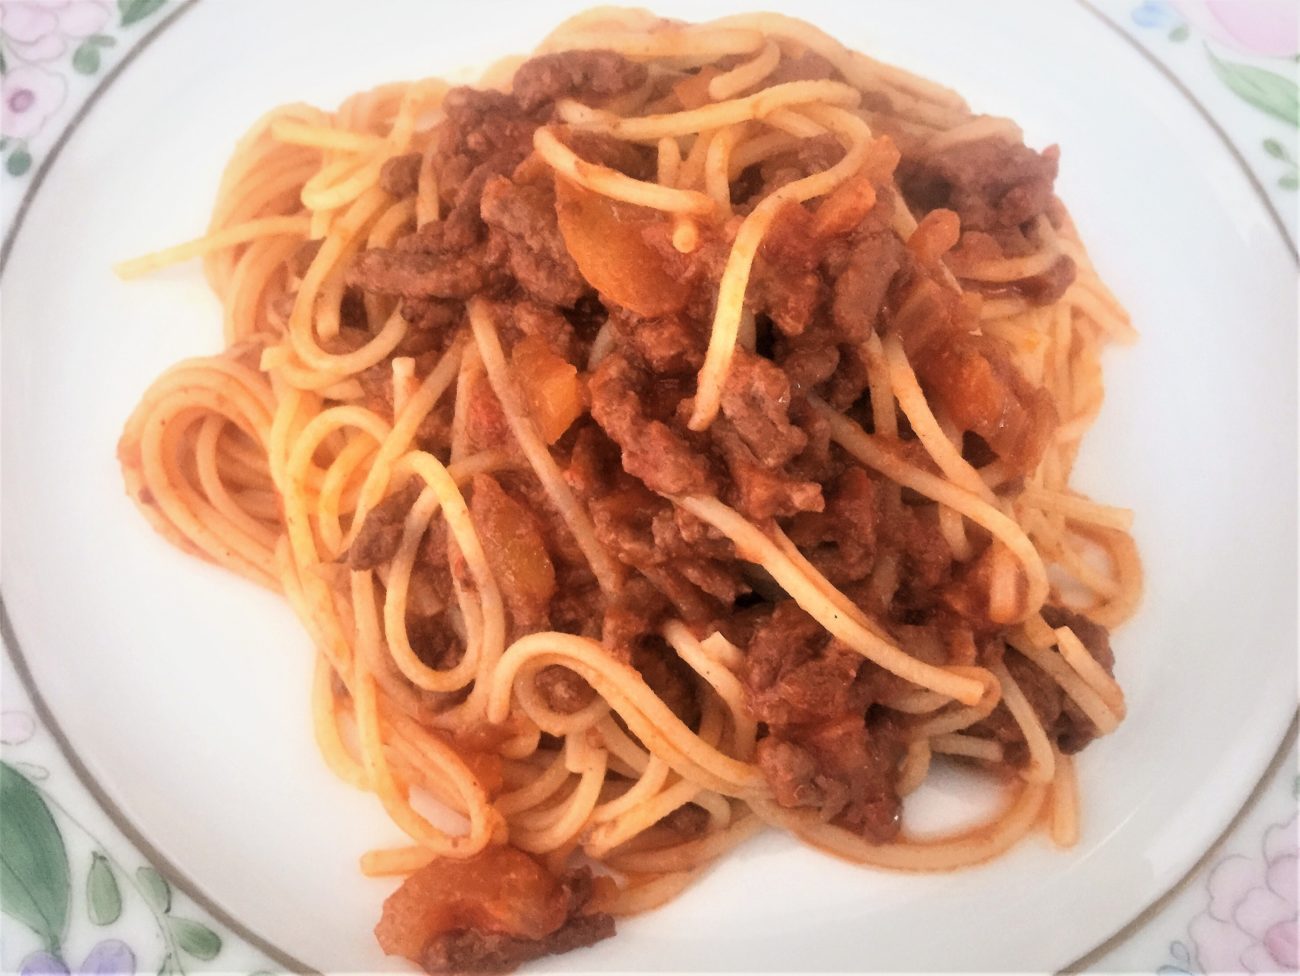 Spaghetti con ragù alla bolognese